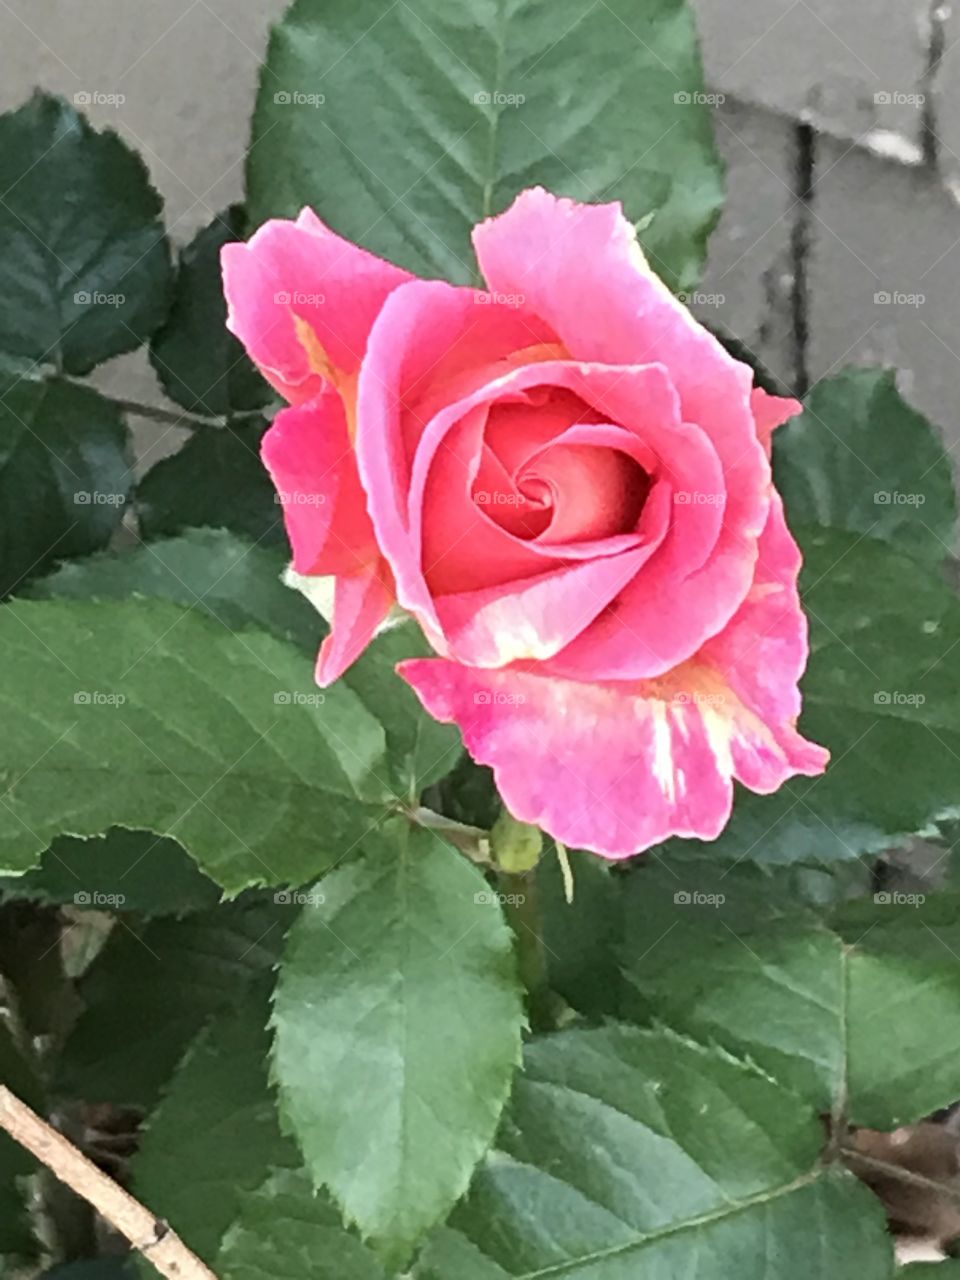 A beautiful pink rose bud